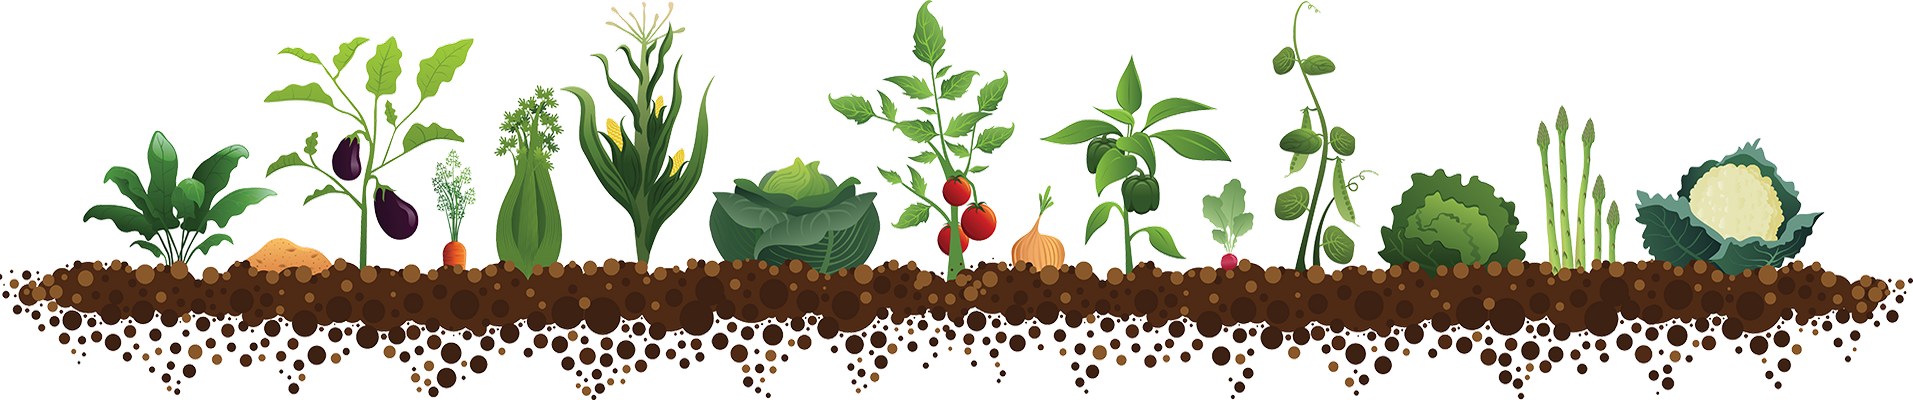 Посів насіння в квітні 2020 томатів, капусти, перцю, огірки, цибулю, баклажан, часник, кабачки, редис, гарбуза